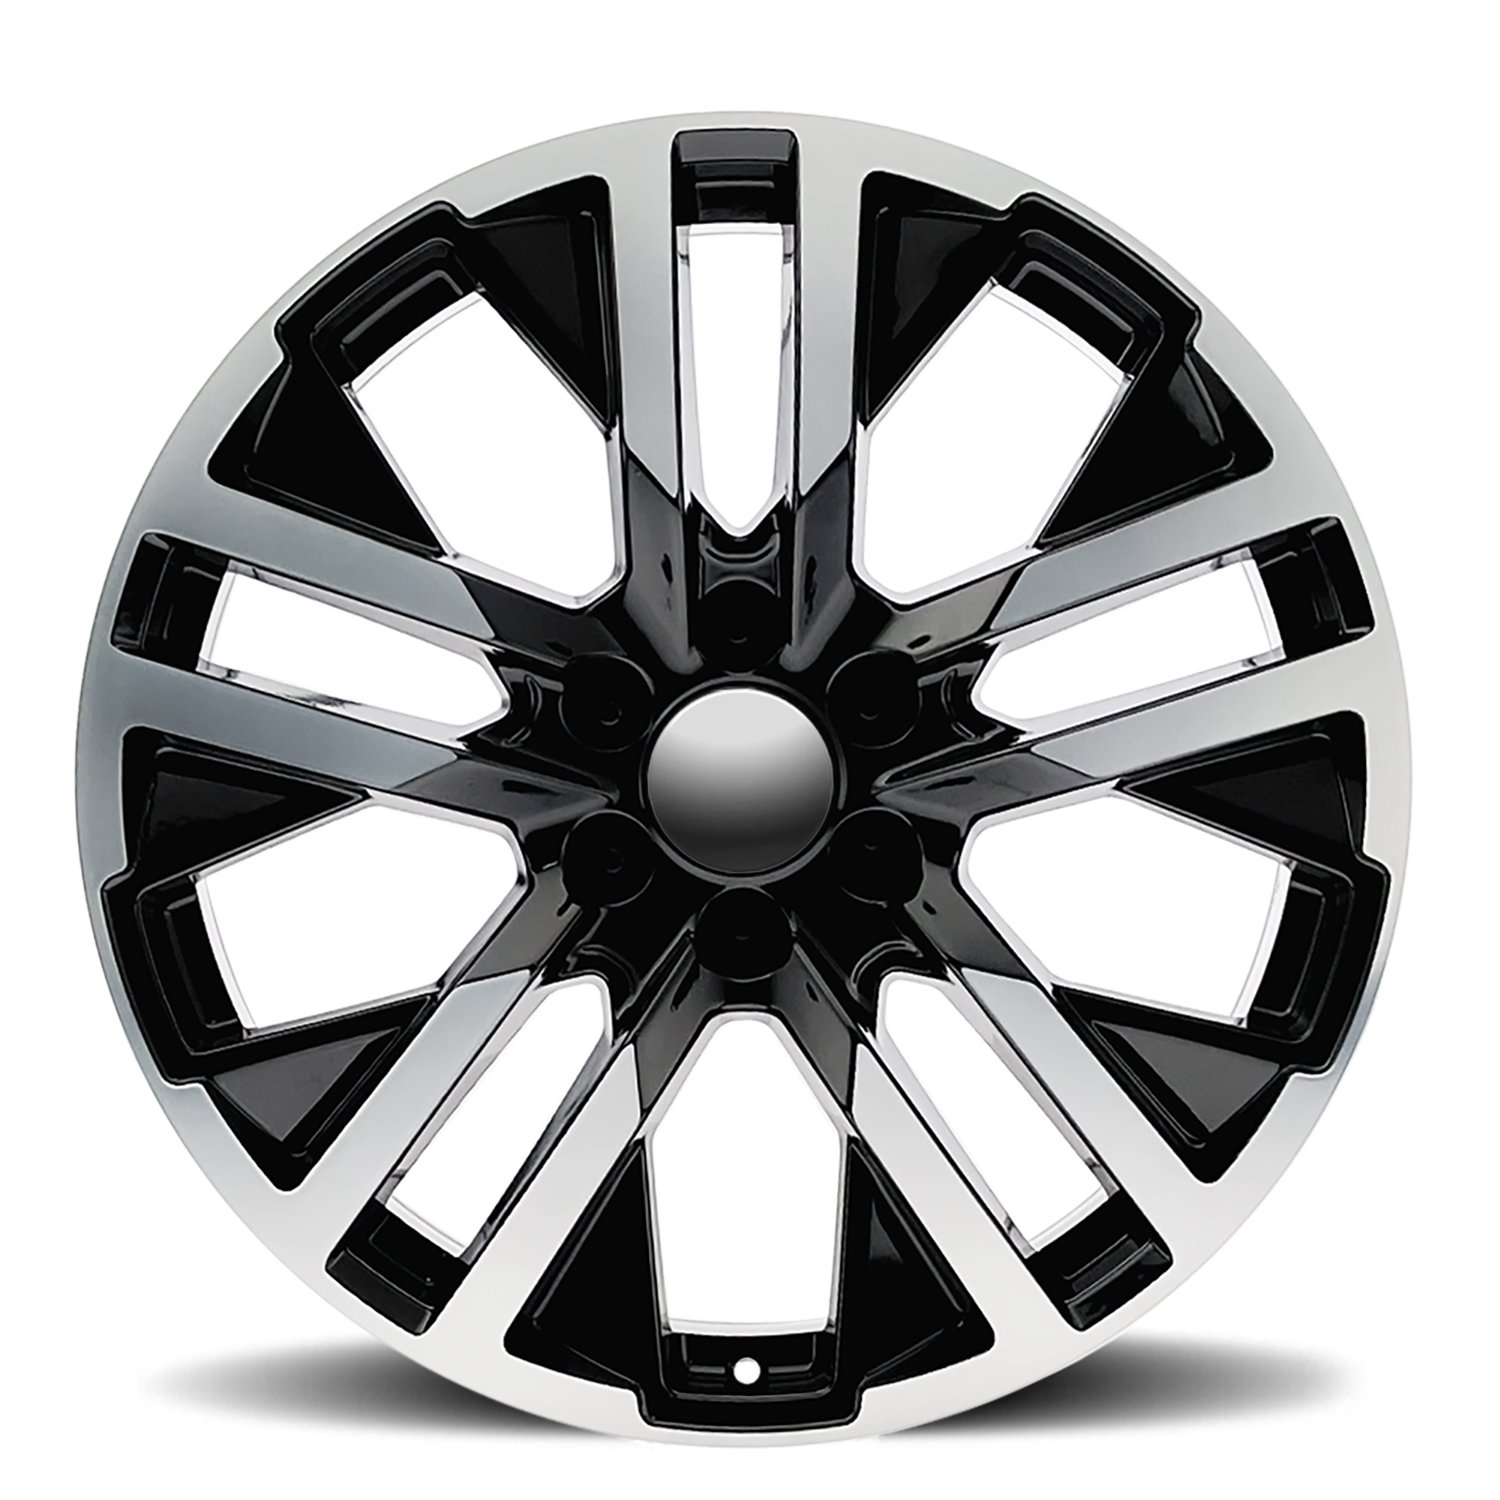 FR96-2290-6lug-Black-Machine-Face-09-GMC-CarbonPro-factory-reproductions-wheels-rims-face